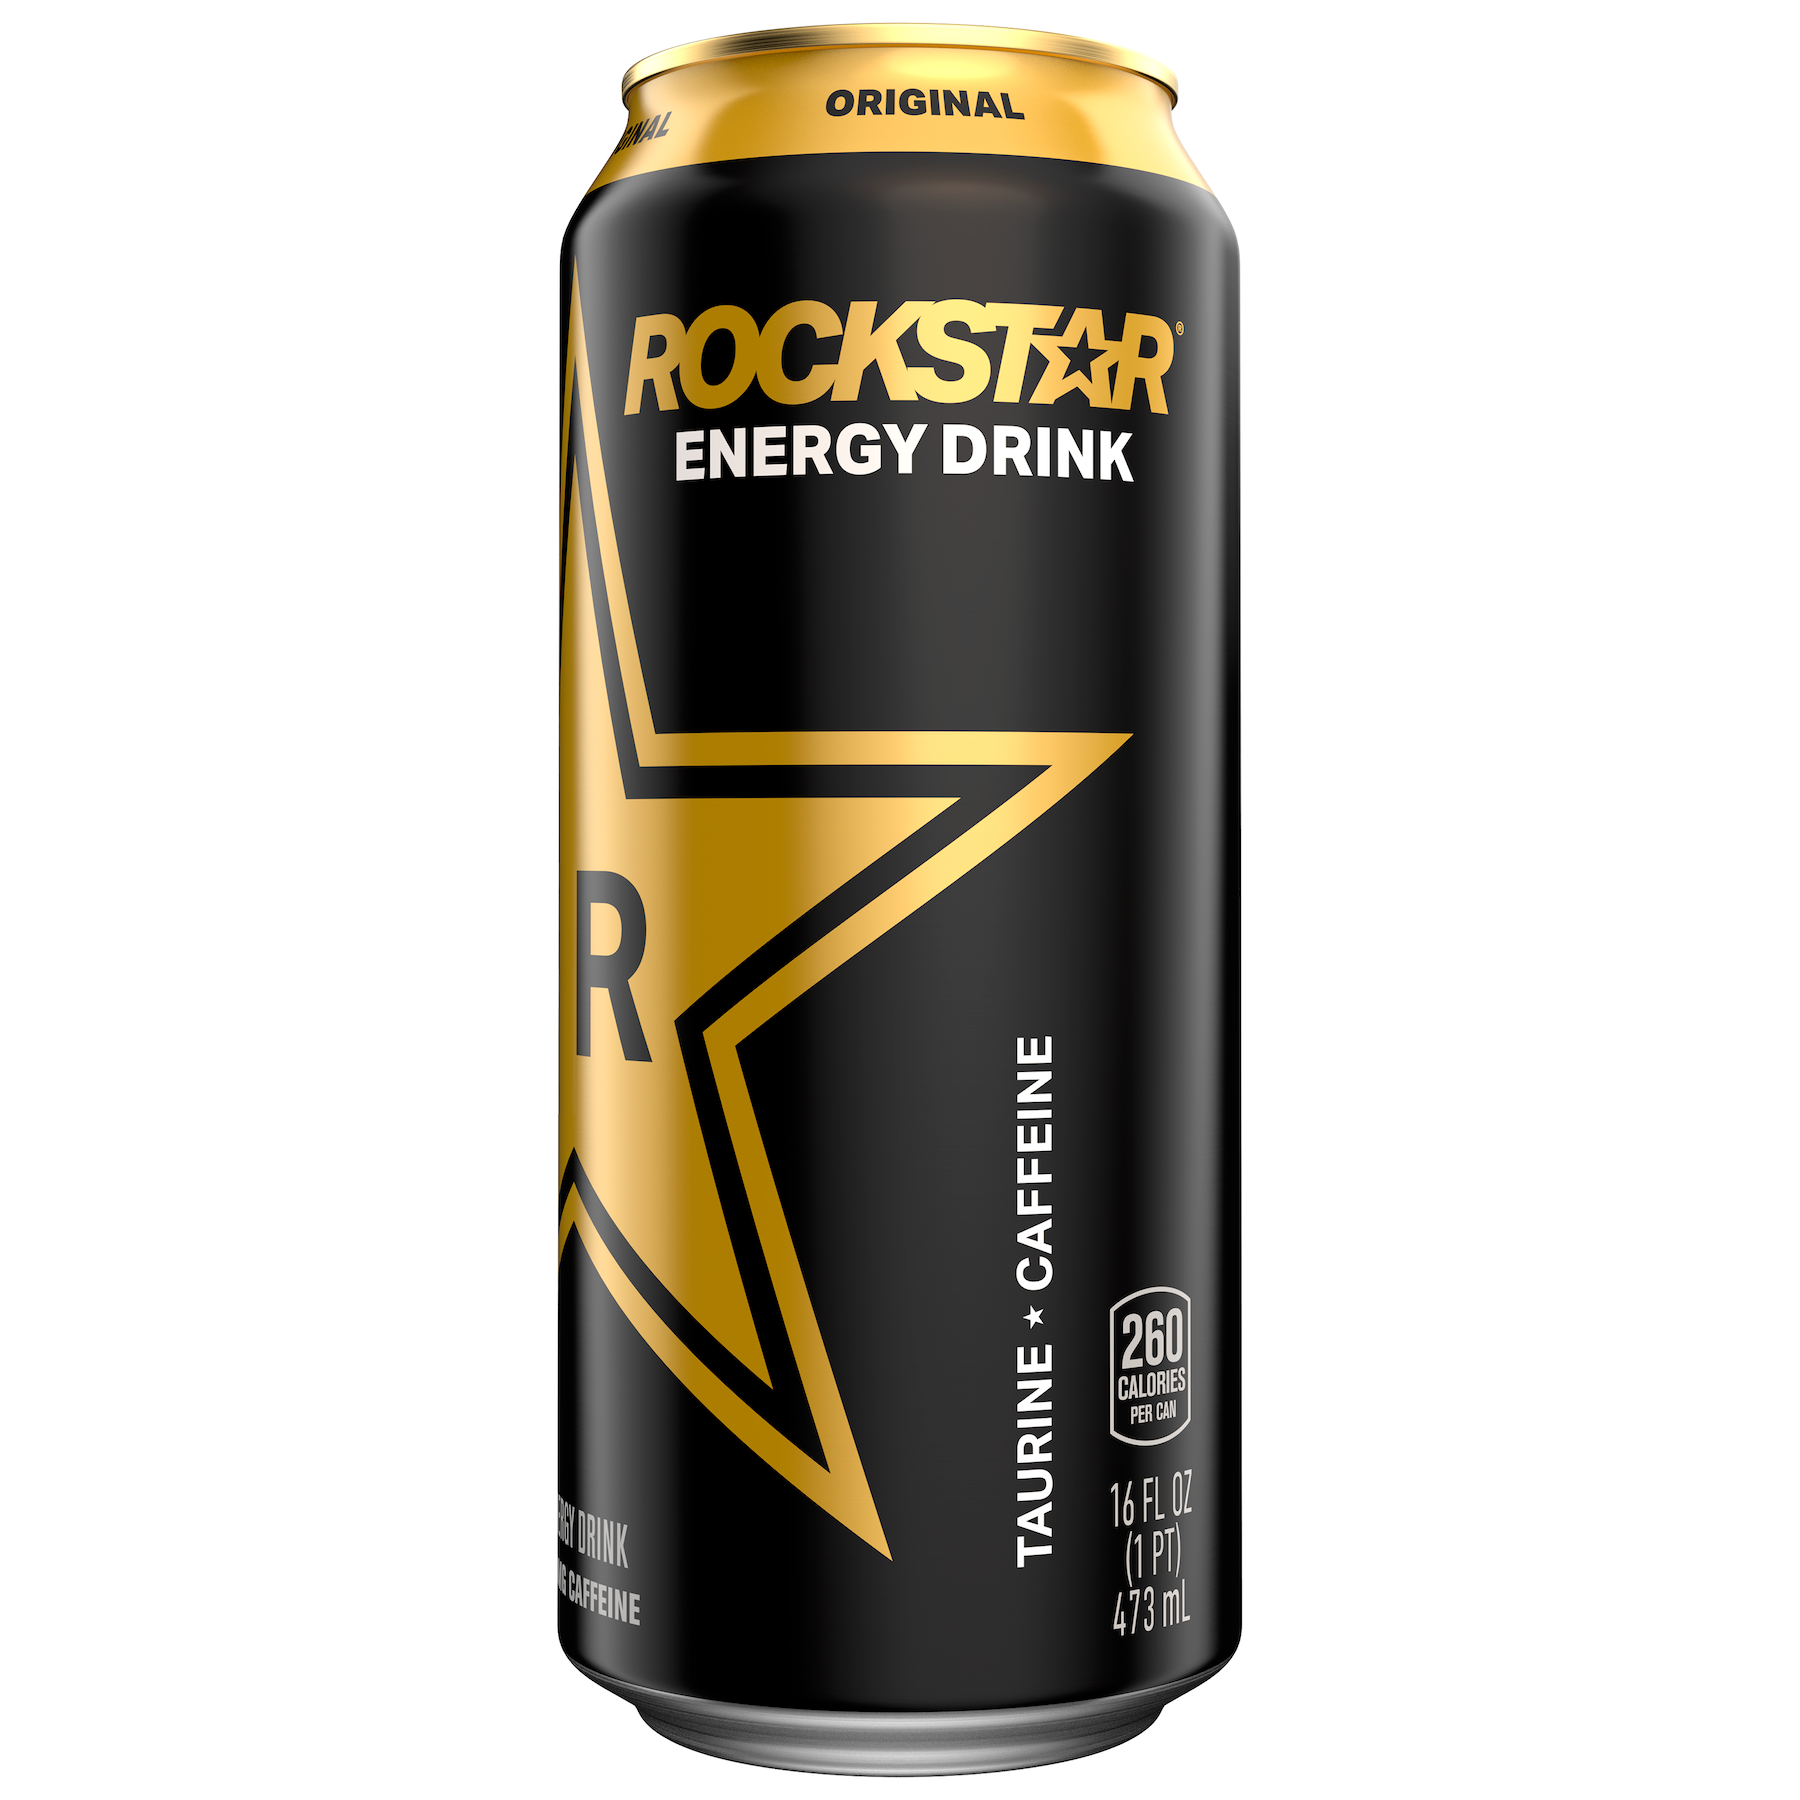 Energy Drinks Like Red Bull, Monster, Rockstar & More